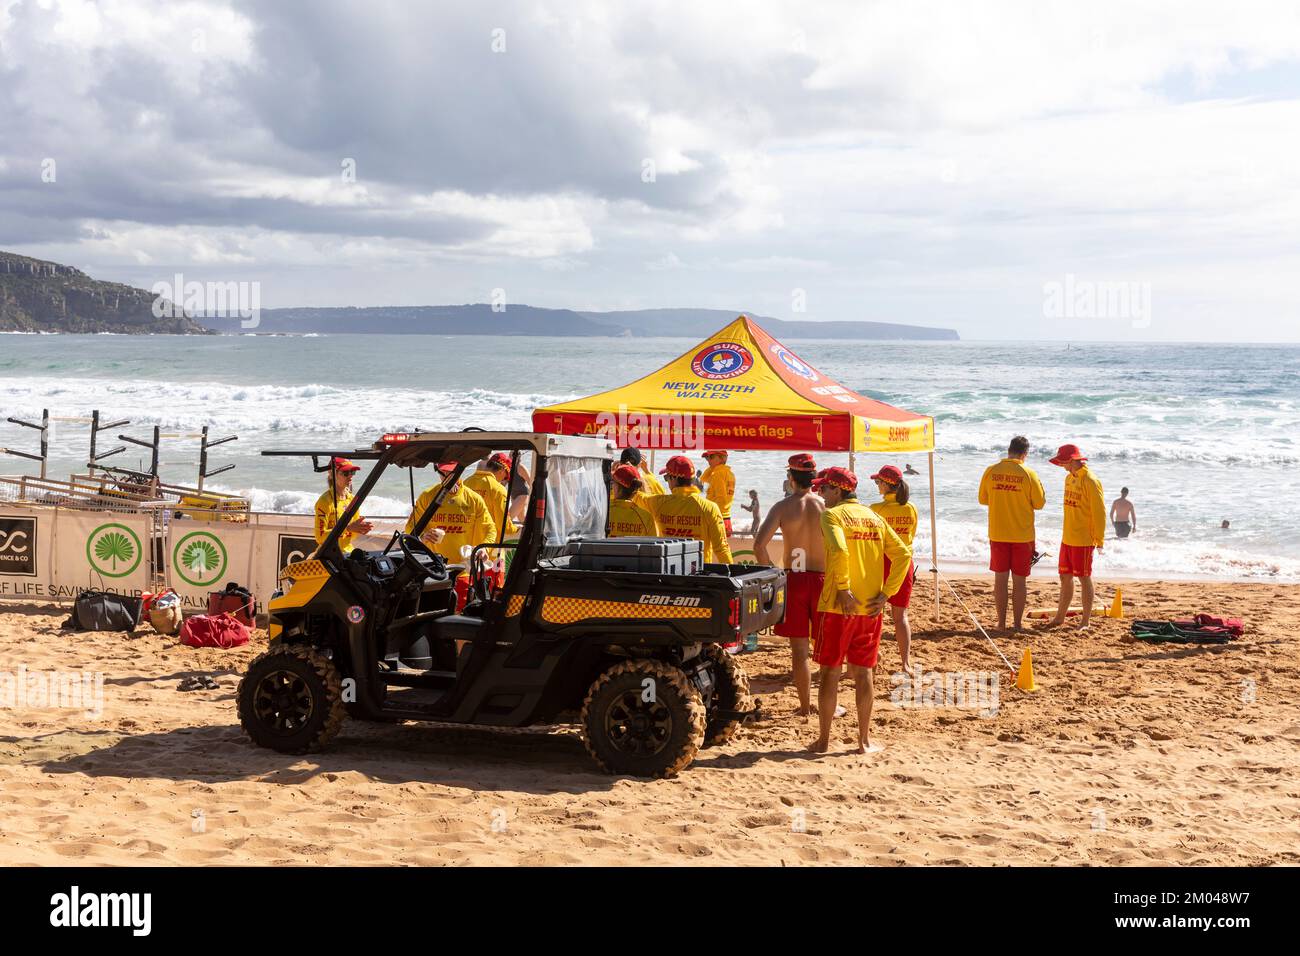 Surf sauvetage patrouille, volontaire sauveteurs surf équipe de sauvetage de Palm Beach Surf Club patrouille Palm Beach un jour d'été, Sydney, NSW, Australie Banque D'Images